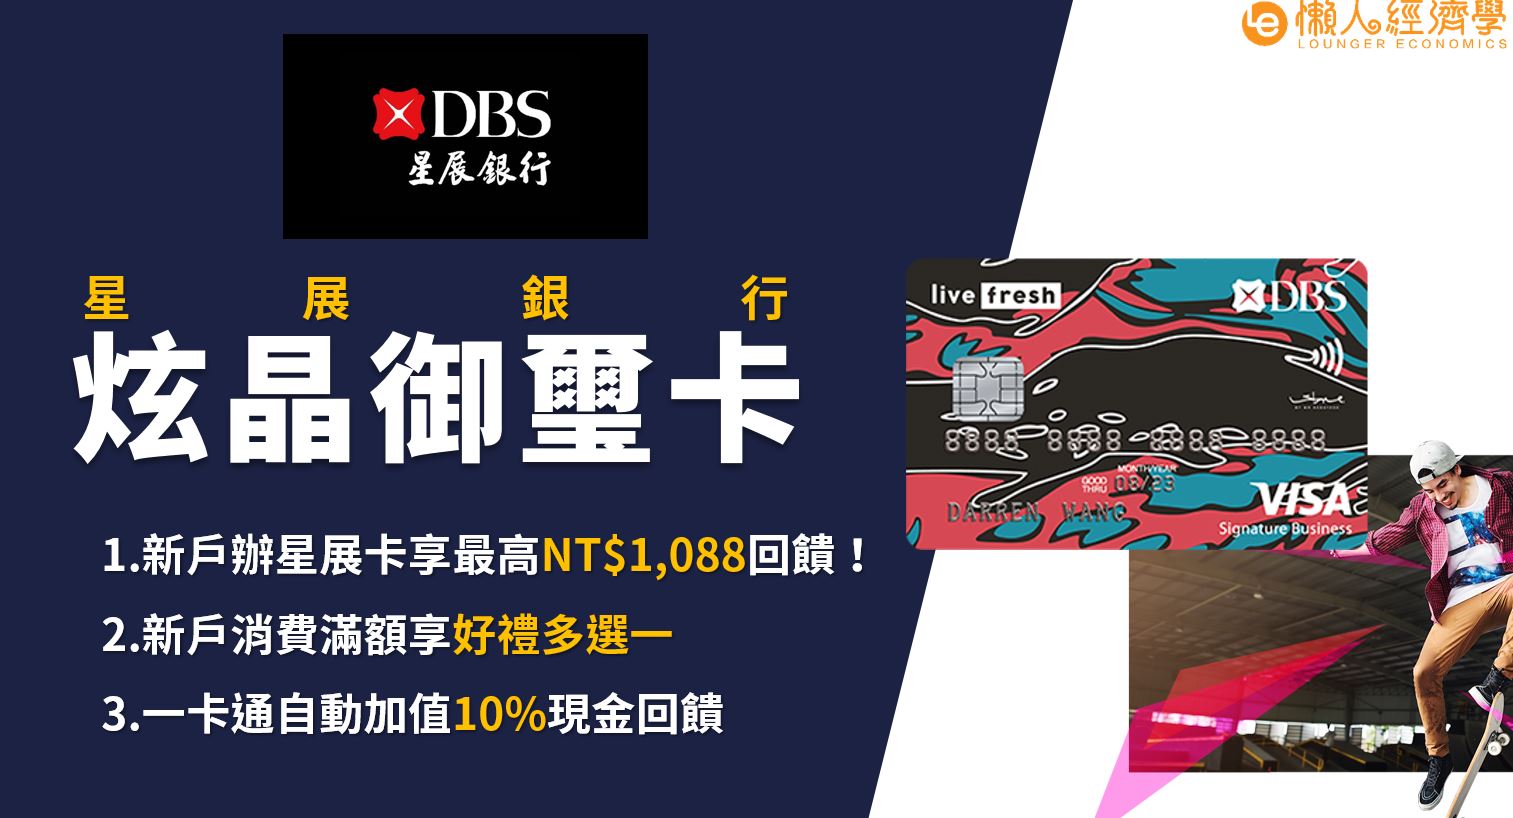 星展炫晶御璽卡：國外海費2.5%、國內消費1.2%現金回饋，出國不怕擋！